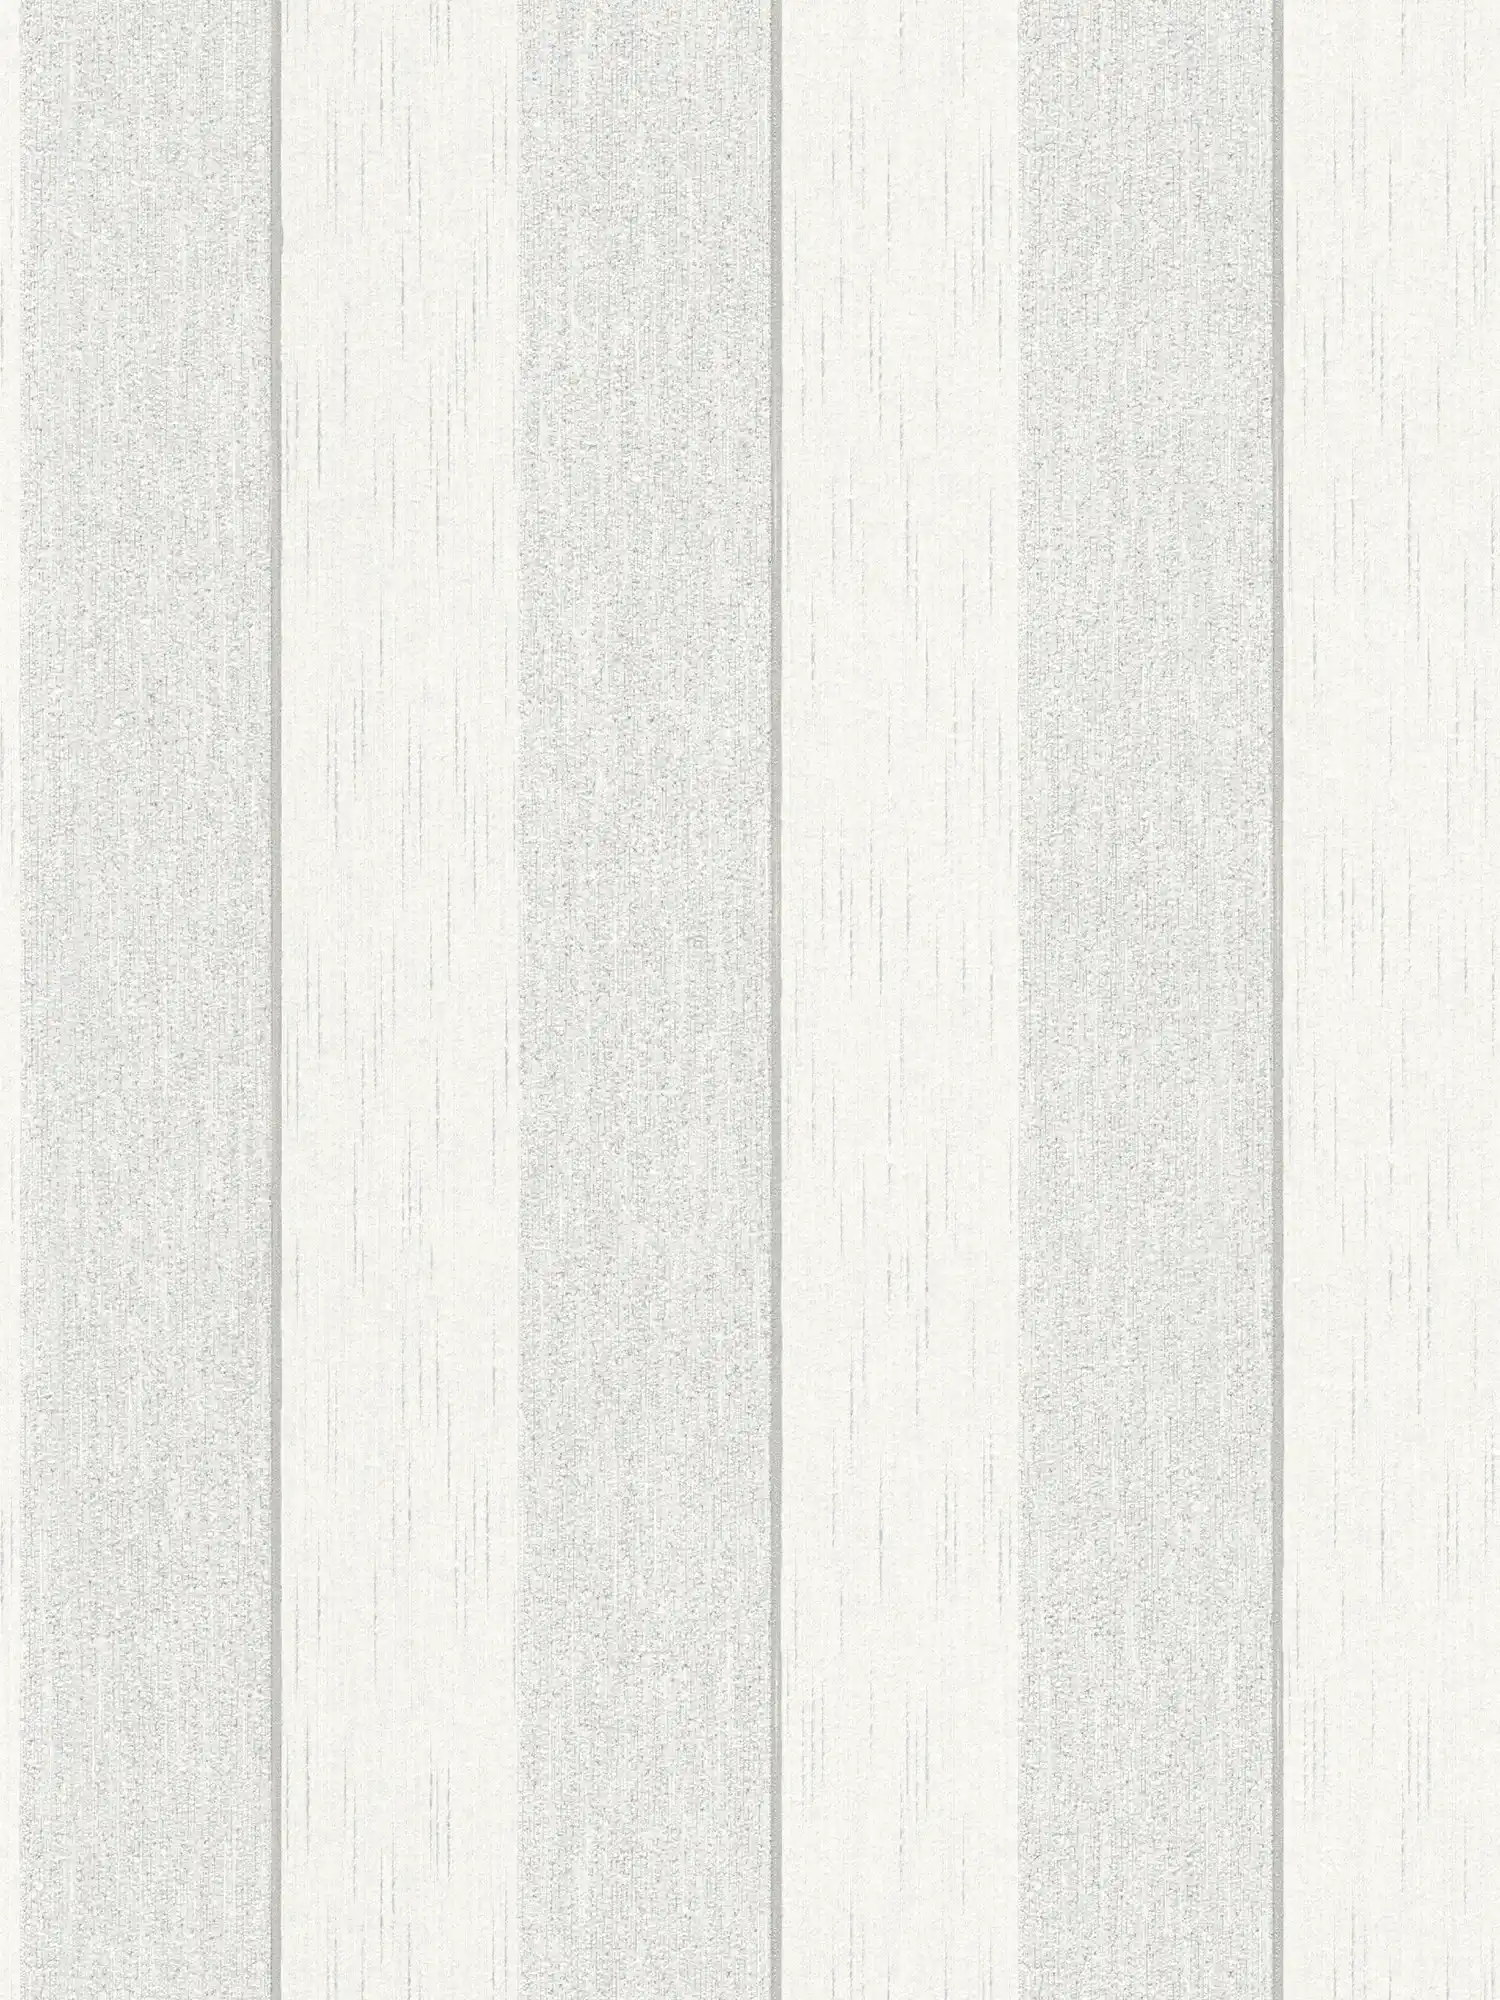 Tapete Struktureffekt-Streifen meliert – Grau, Weiß
